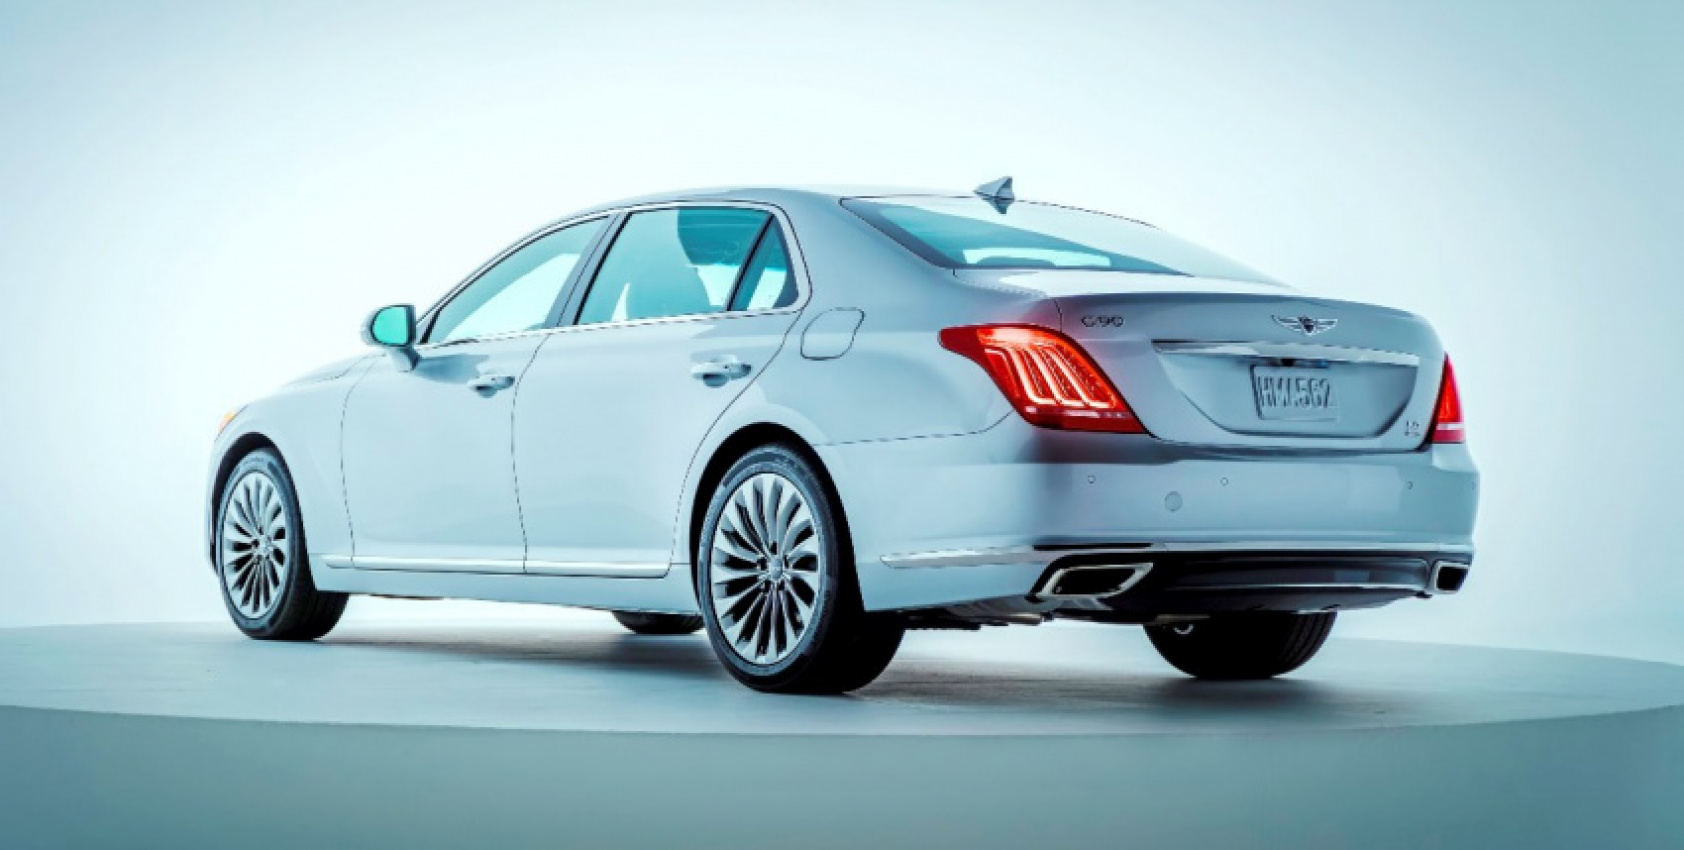 autos, car brands, cars, genesis, hyundai, genesis g90, a look at hyundai genesis g90 luxury sedan